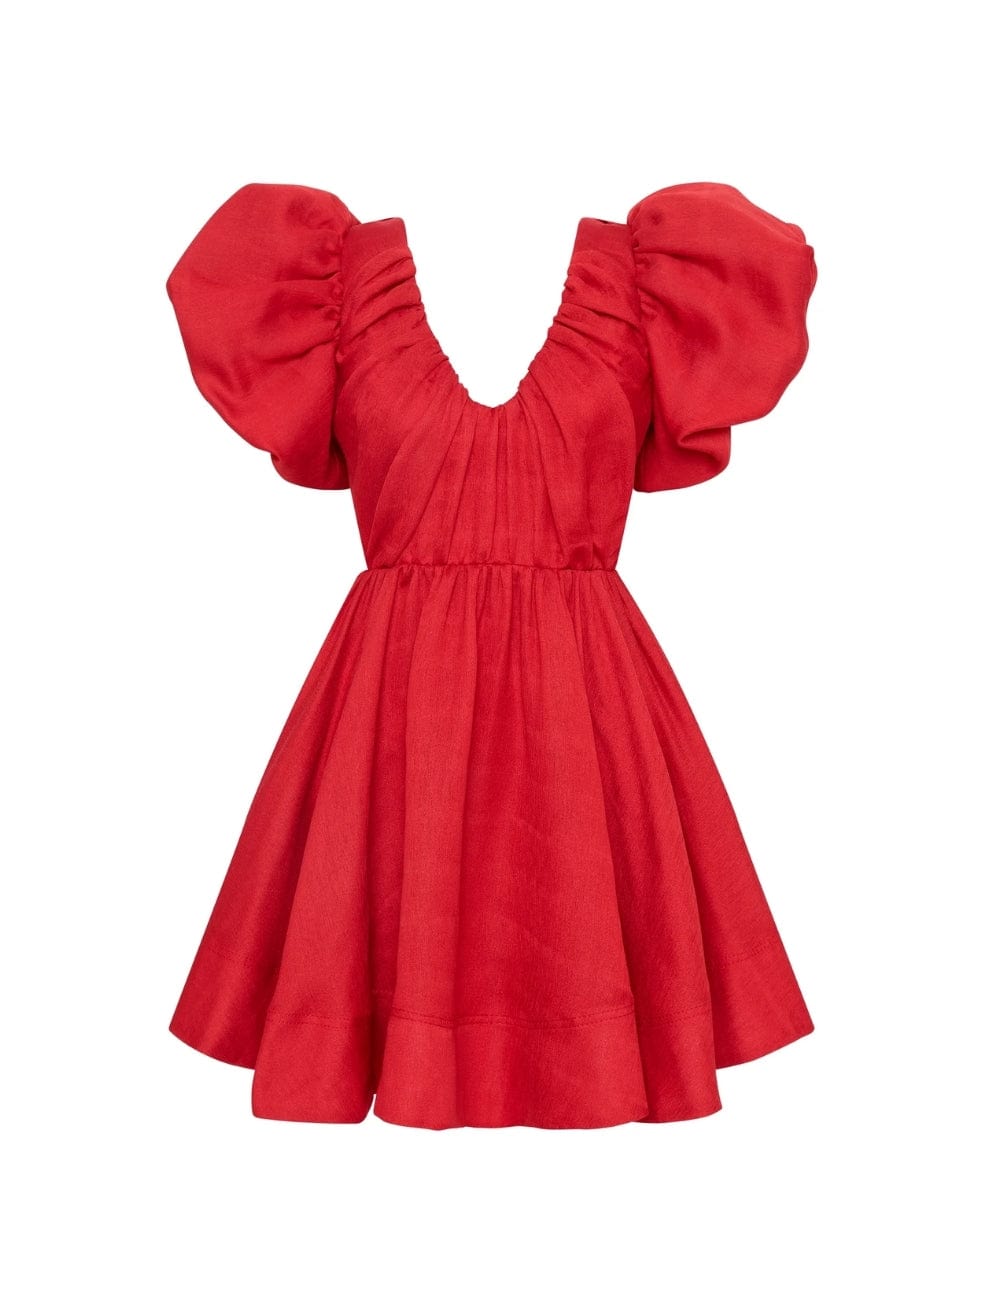 Red Gretta Bow Back Mini Dress